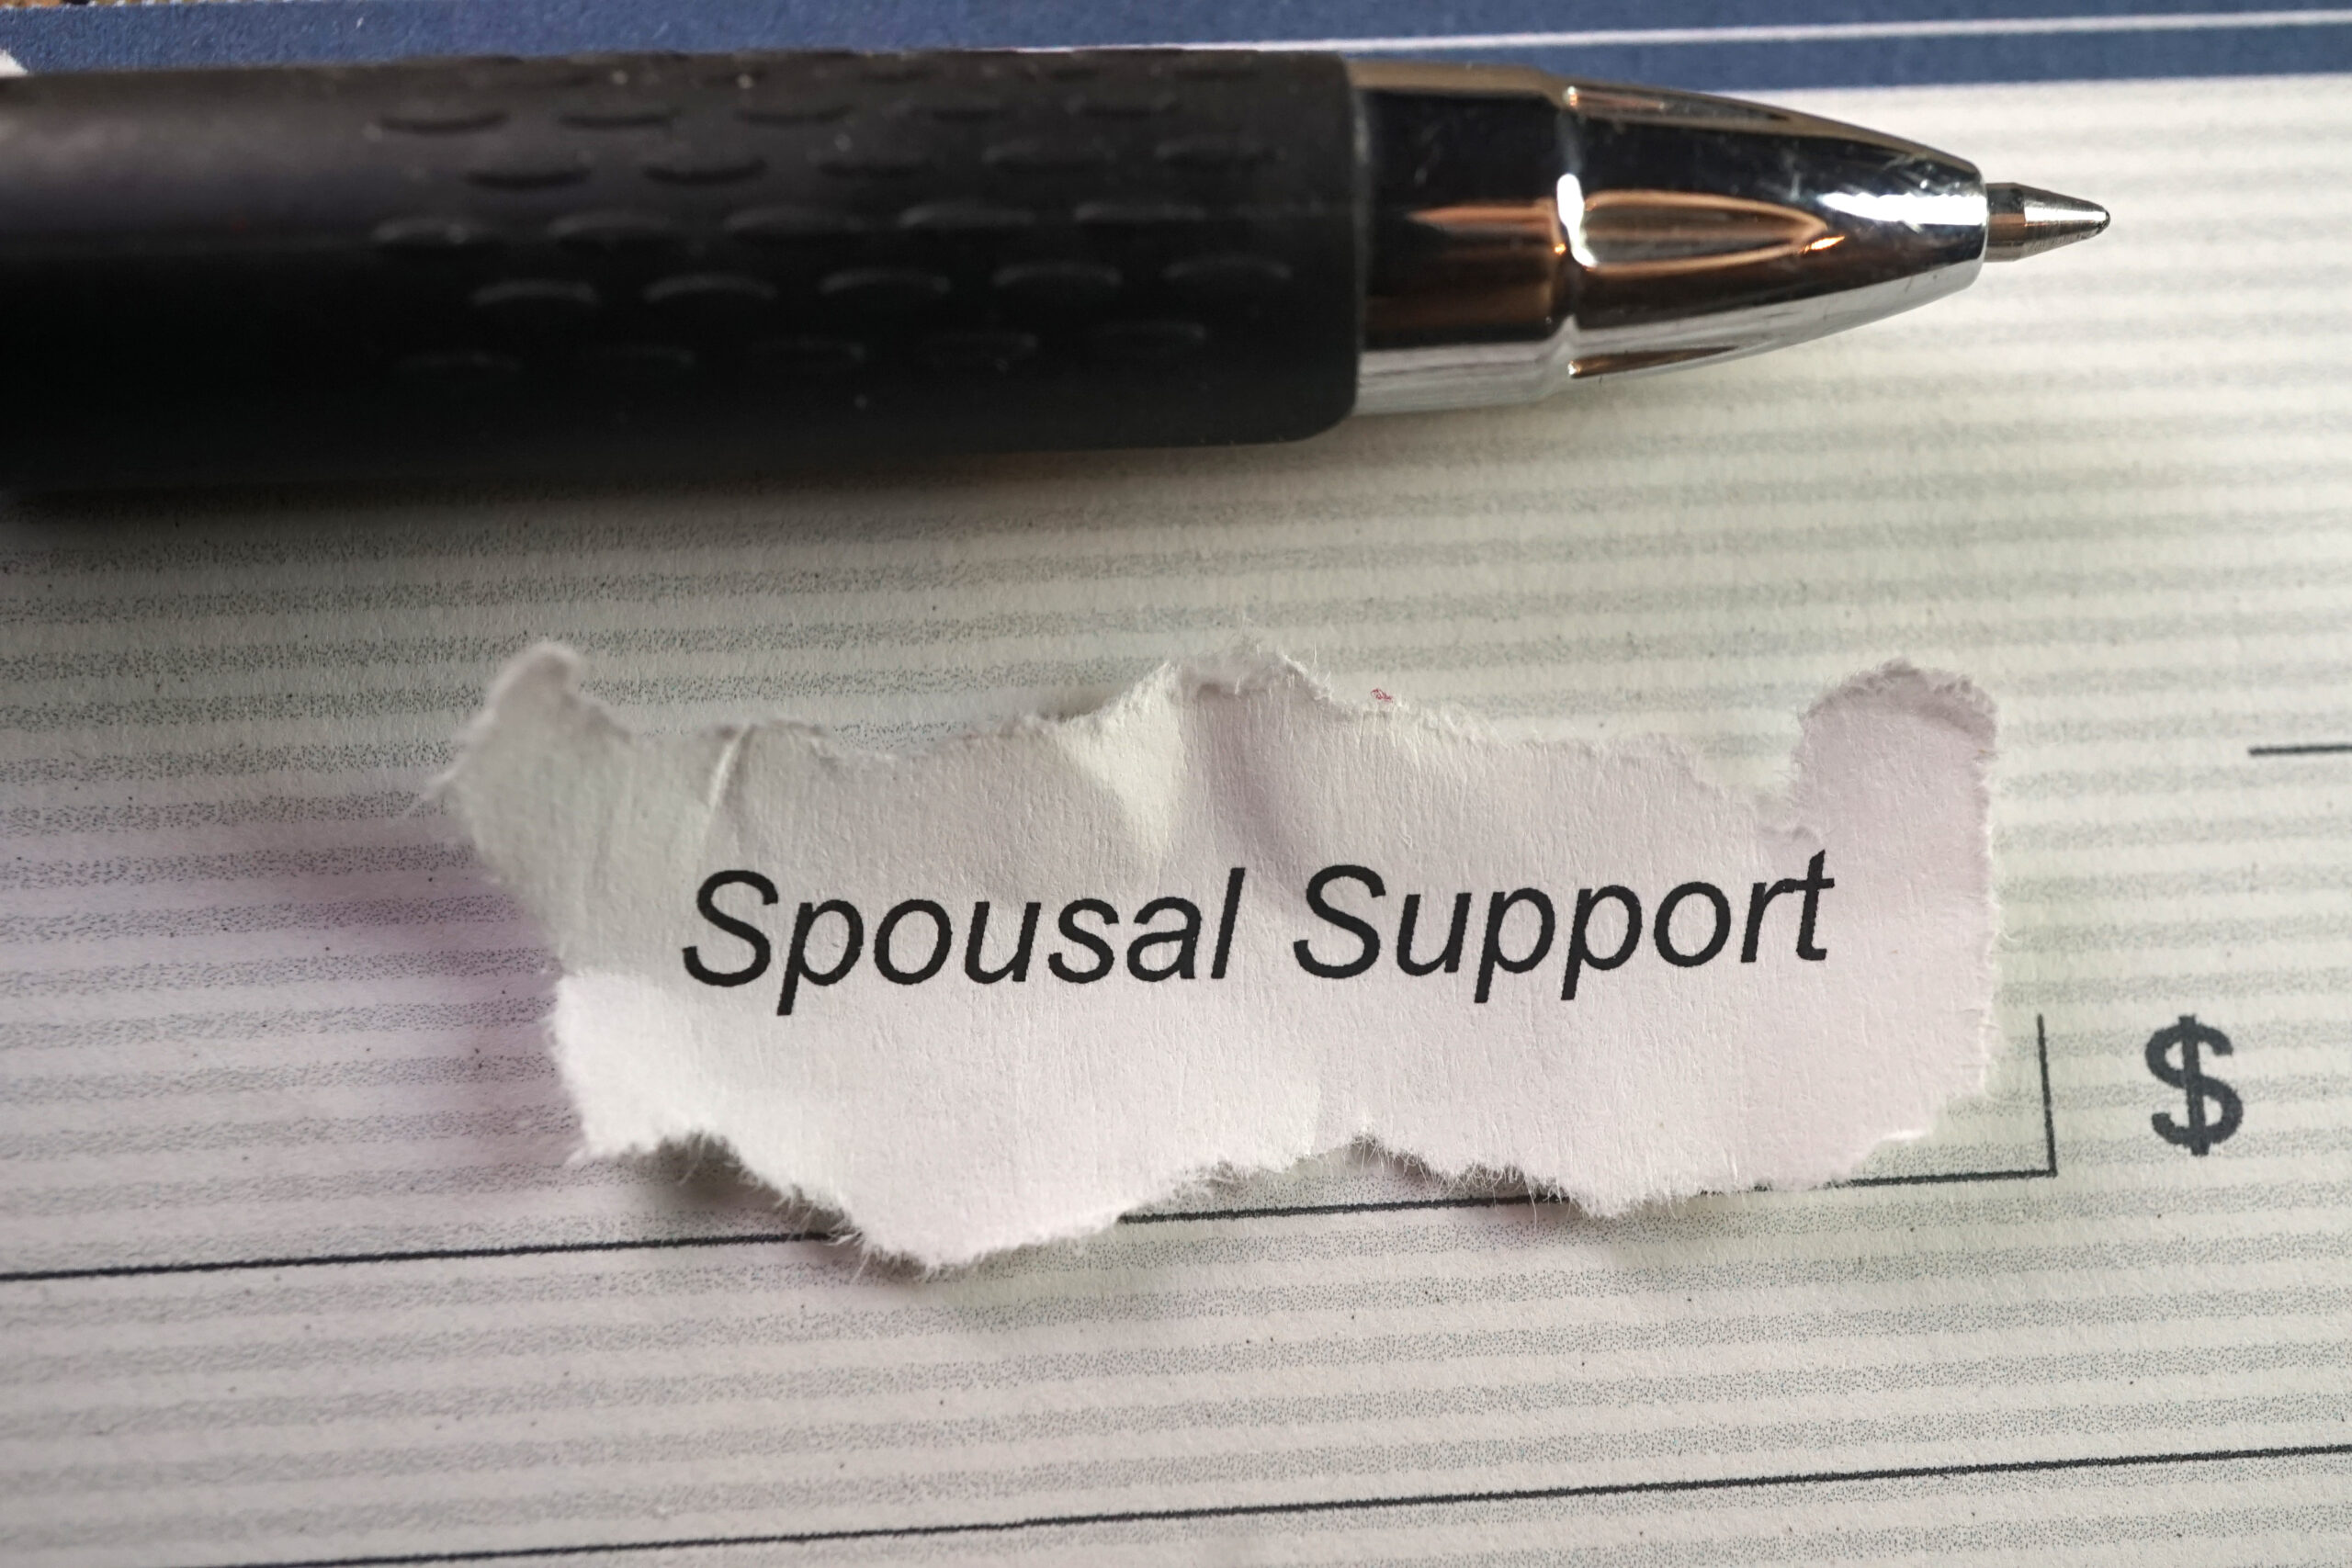 pro-athlete divorces spousal support